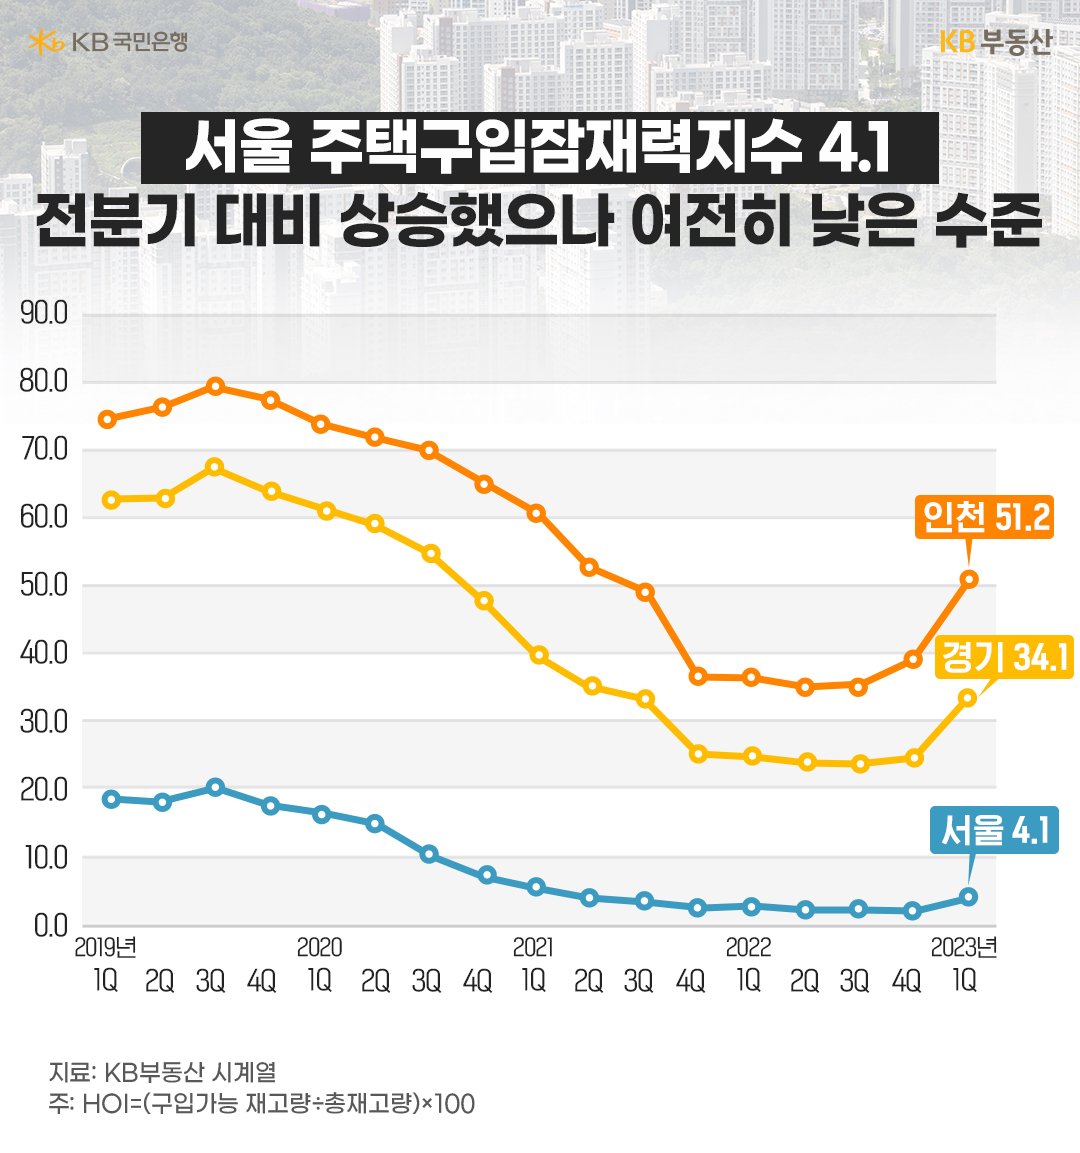 최근 5년간의 주요 지역별 '주택구입잠재력지수'를 나타낸 그래프이다. 주황색 선은 인천 지역을 나타내고, 노란색 선은 경기 지역, 파란색 선은 서울을 나타낸다.